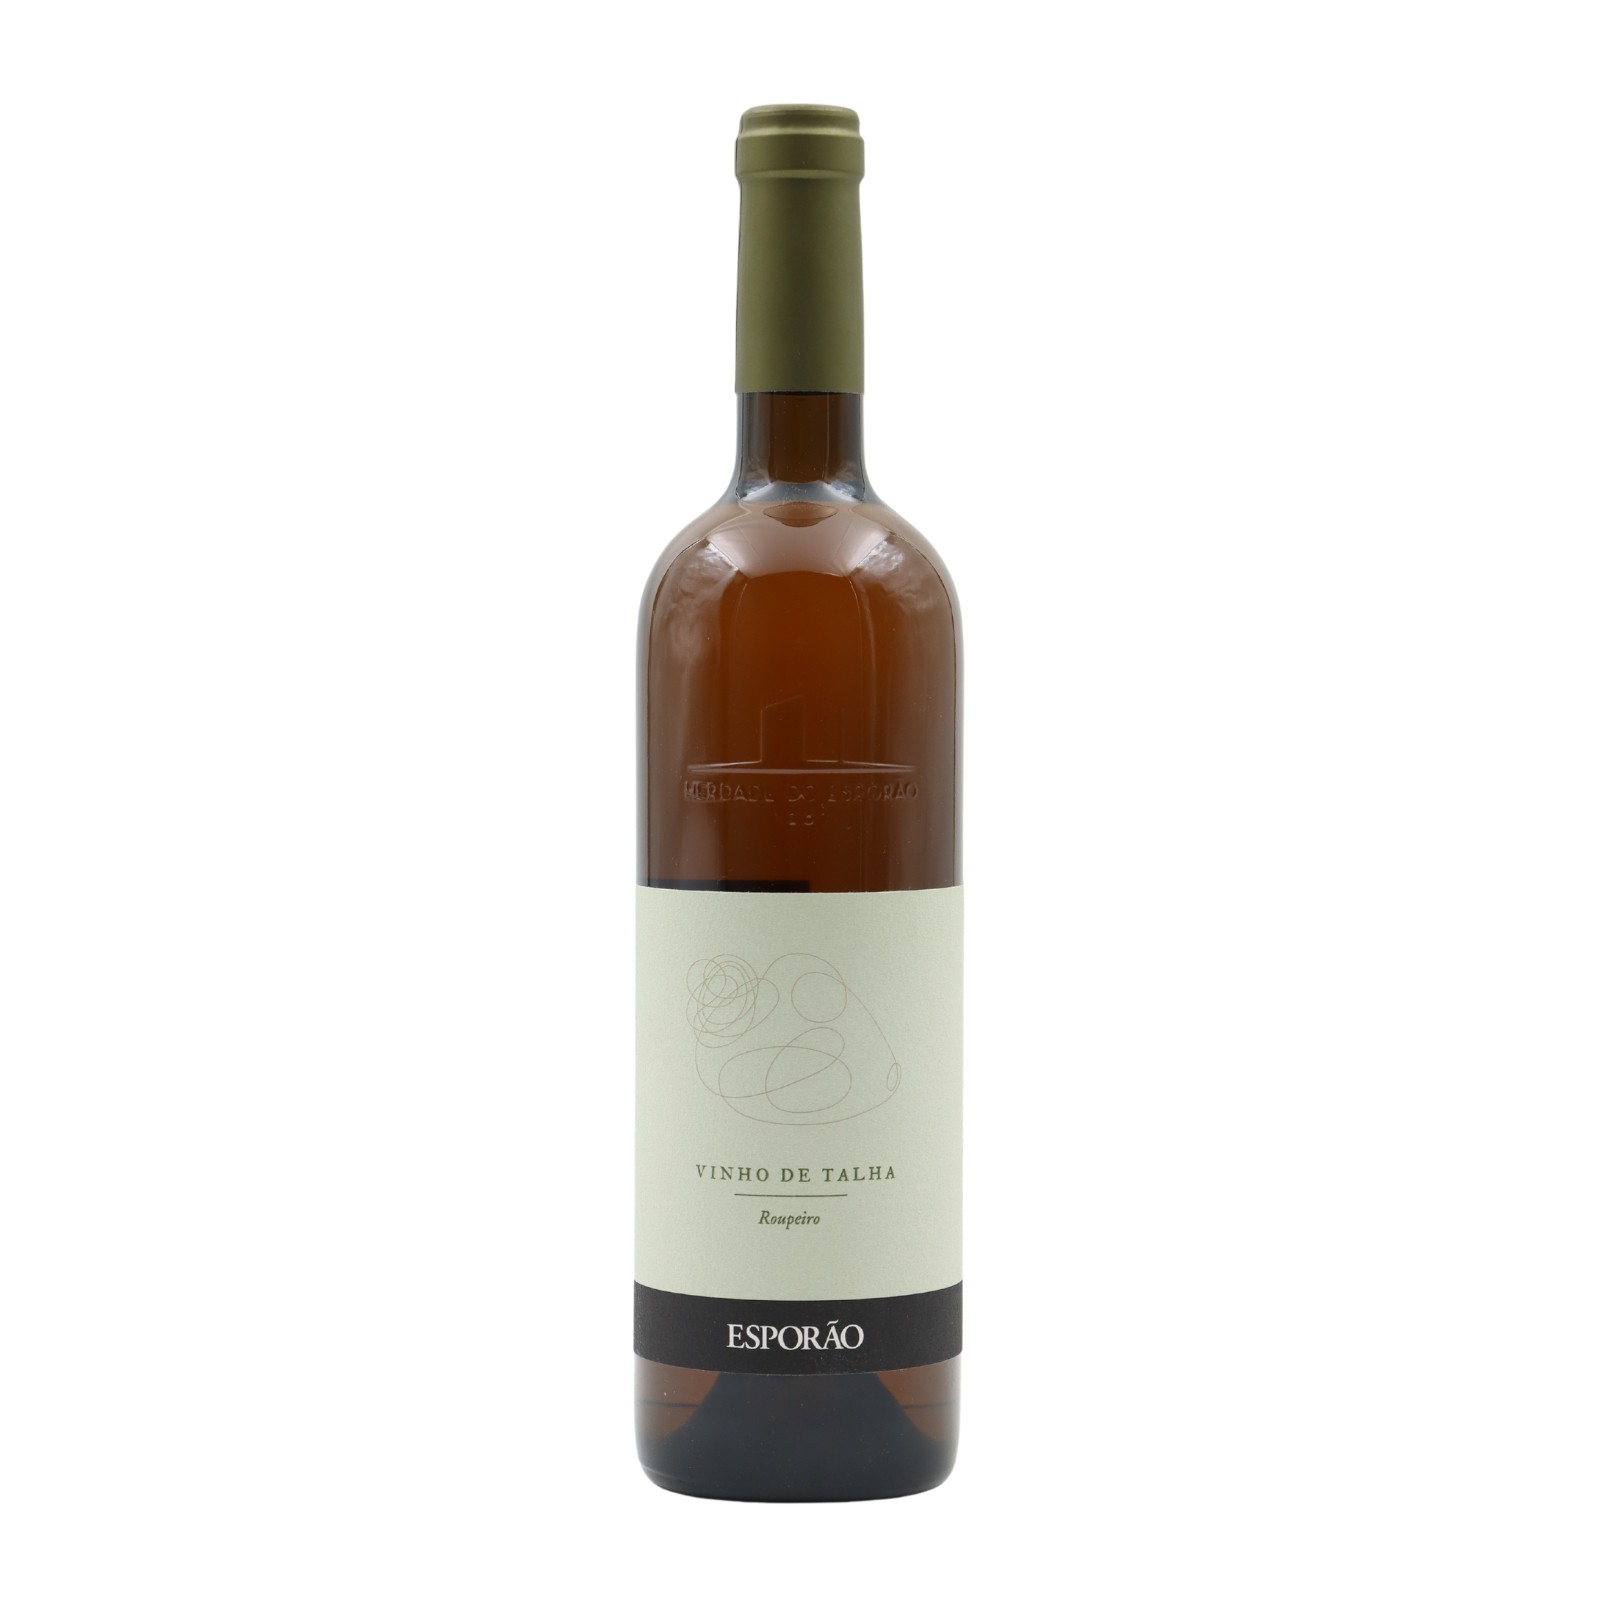 Esporão Vinho de Talha Roupeiro Blanc 2019